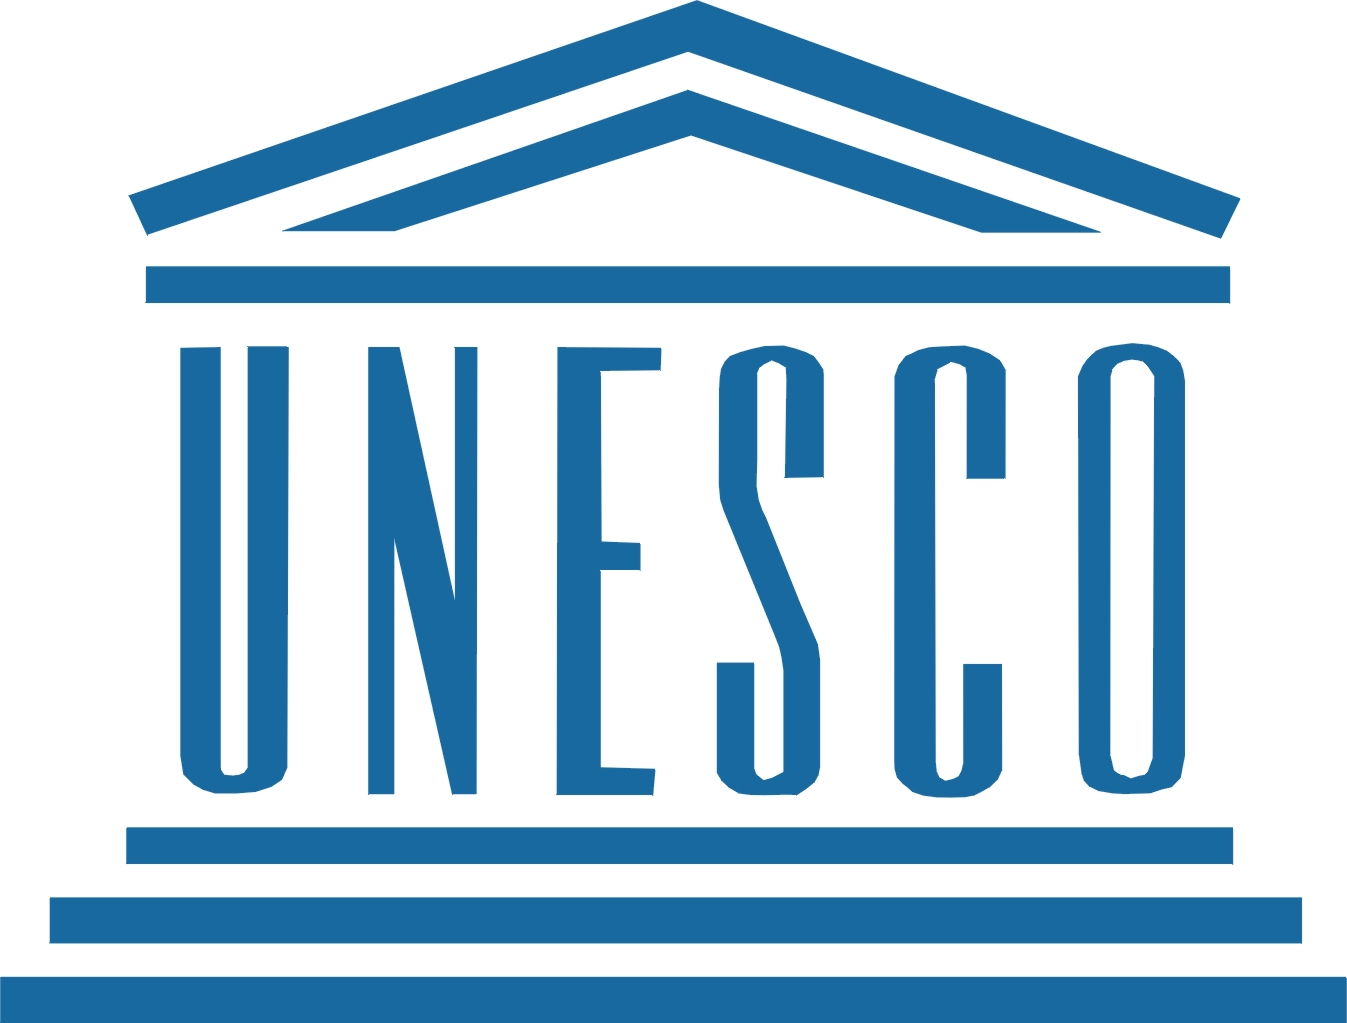 Hasta el 15 de junio se encuentra abierta la convocatoria al Fondo Internacional para la Diversidad Cultural de la UNESCO imagen